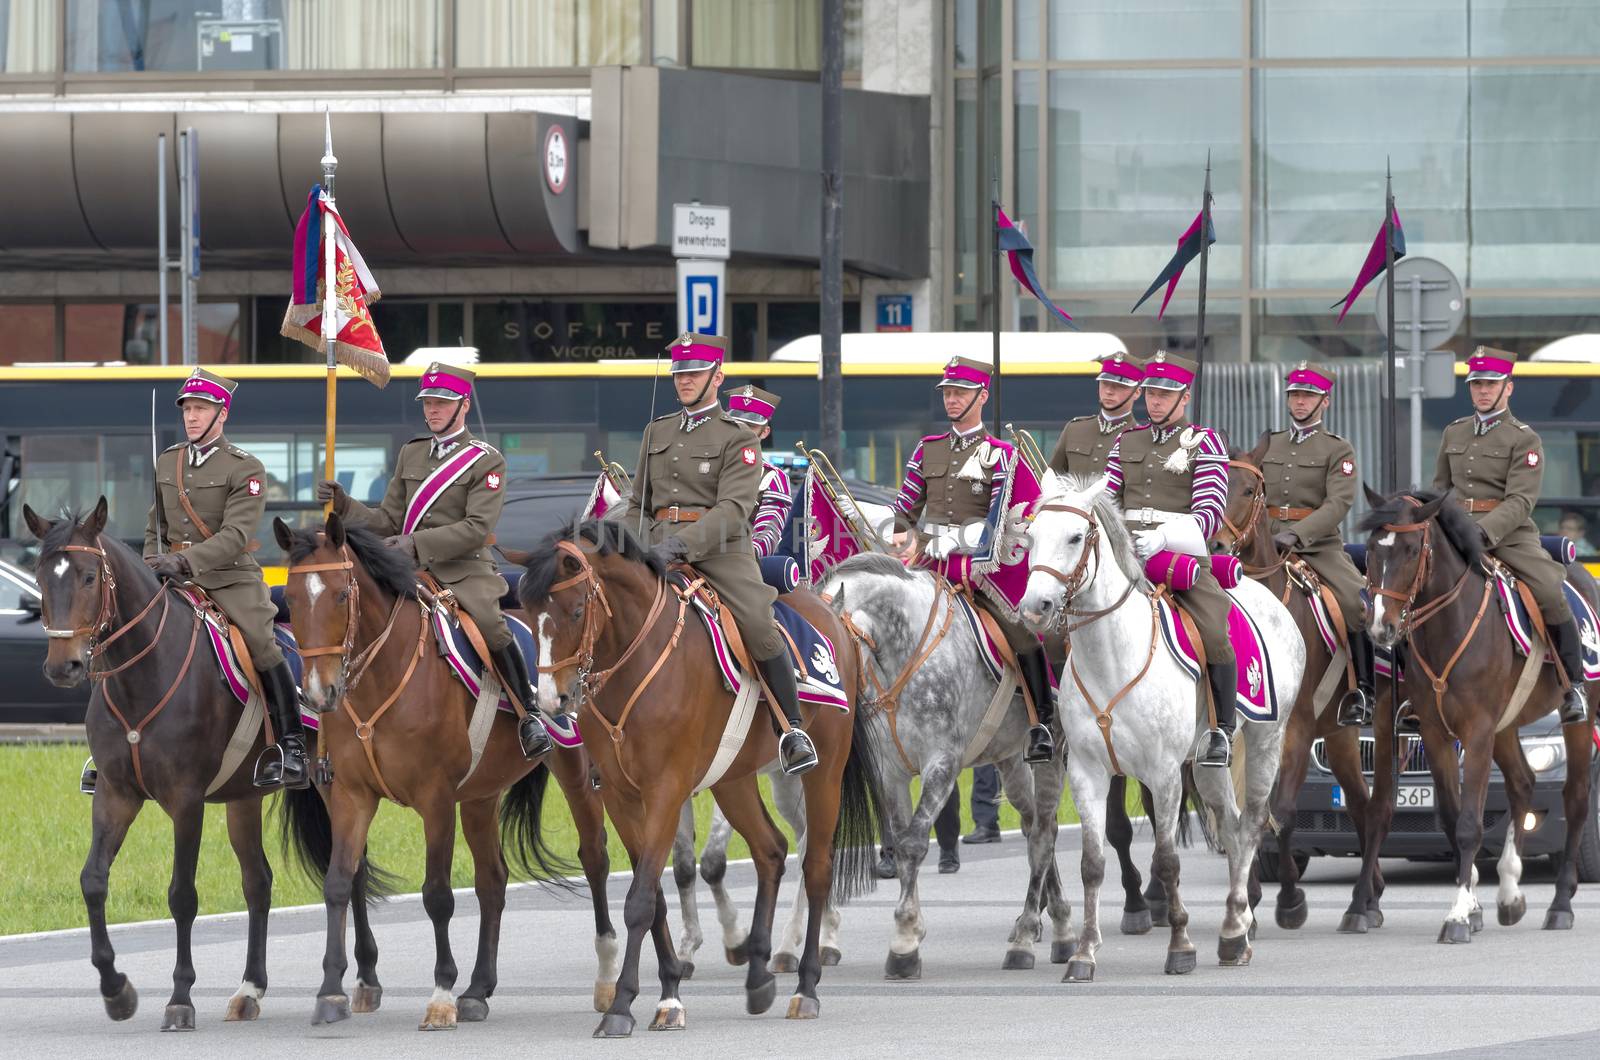 Military parade by dario